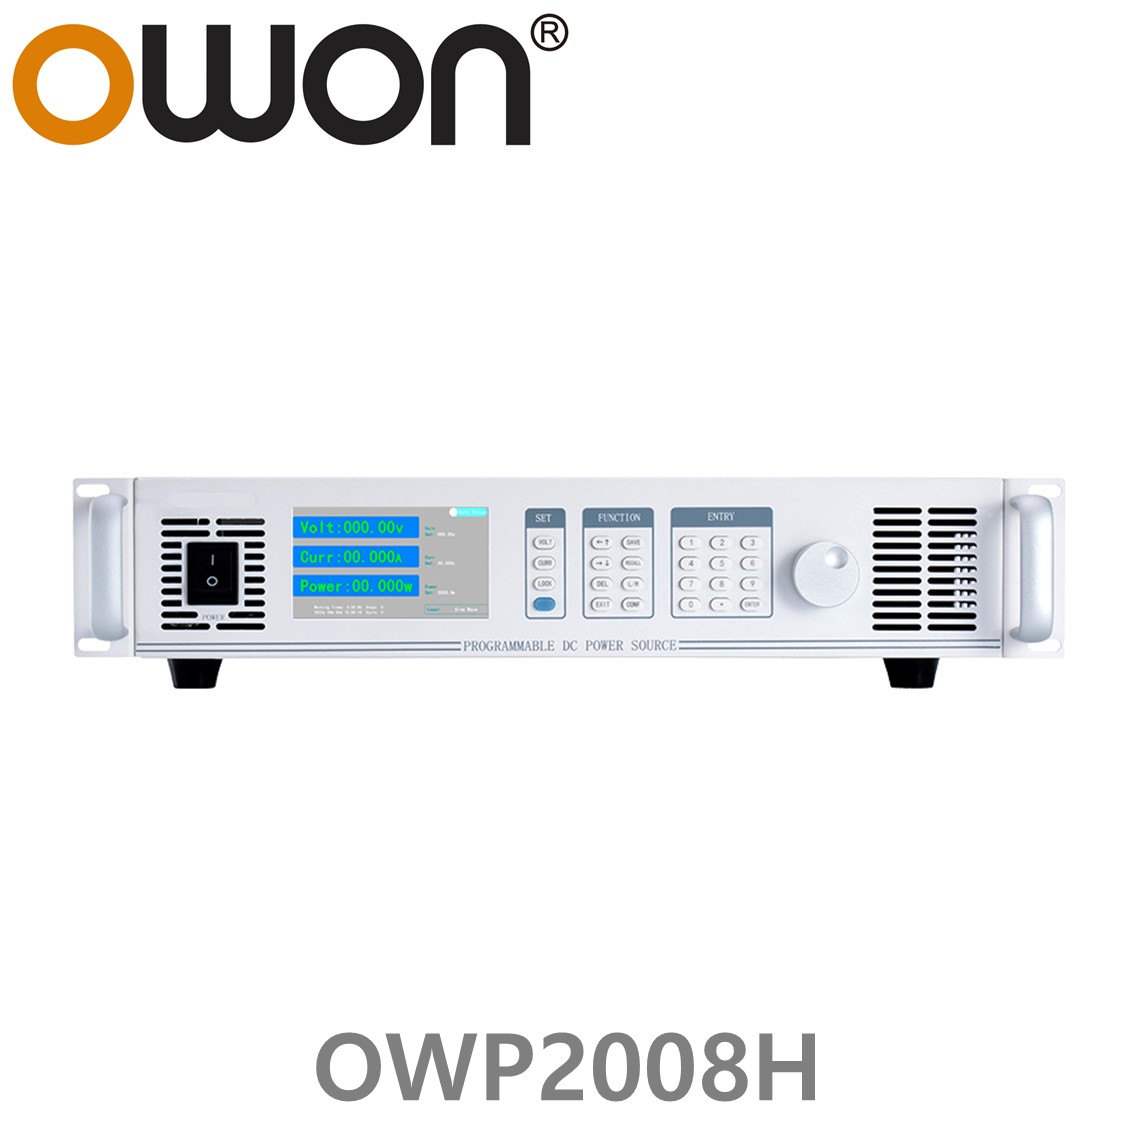 [ OWON ] OWP2008H 고전력 DC파워서플라이, 0-80.000V / 0-60.000A / 2000.0W DC전원공급장치